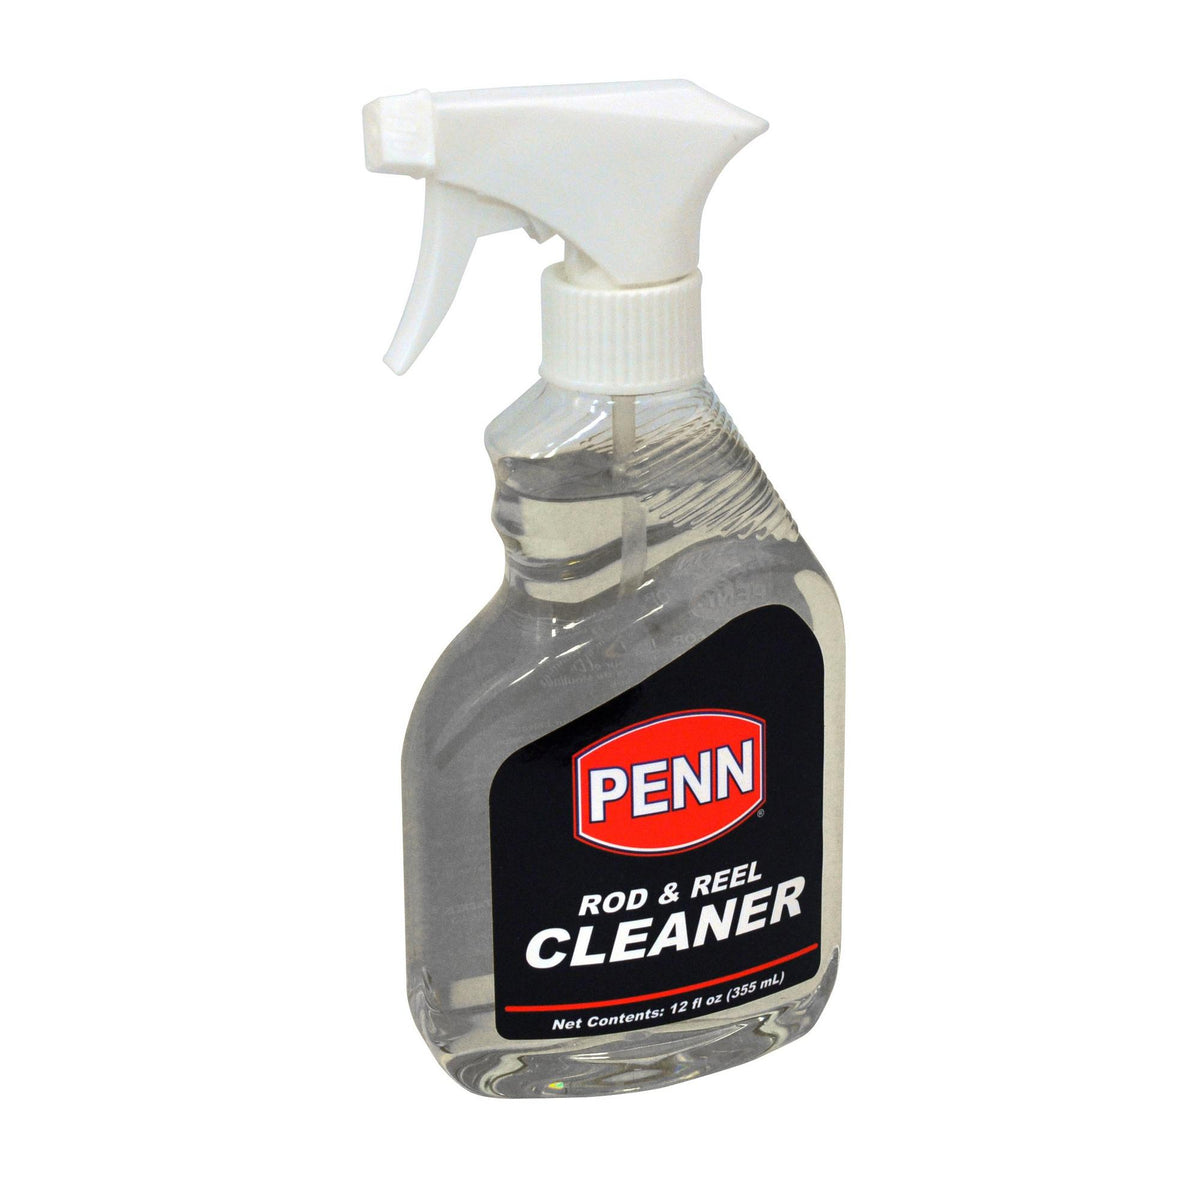 PENN Rod & Reel Cleaner 4 oz